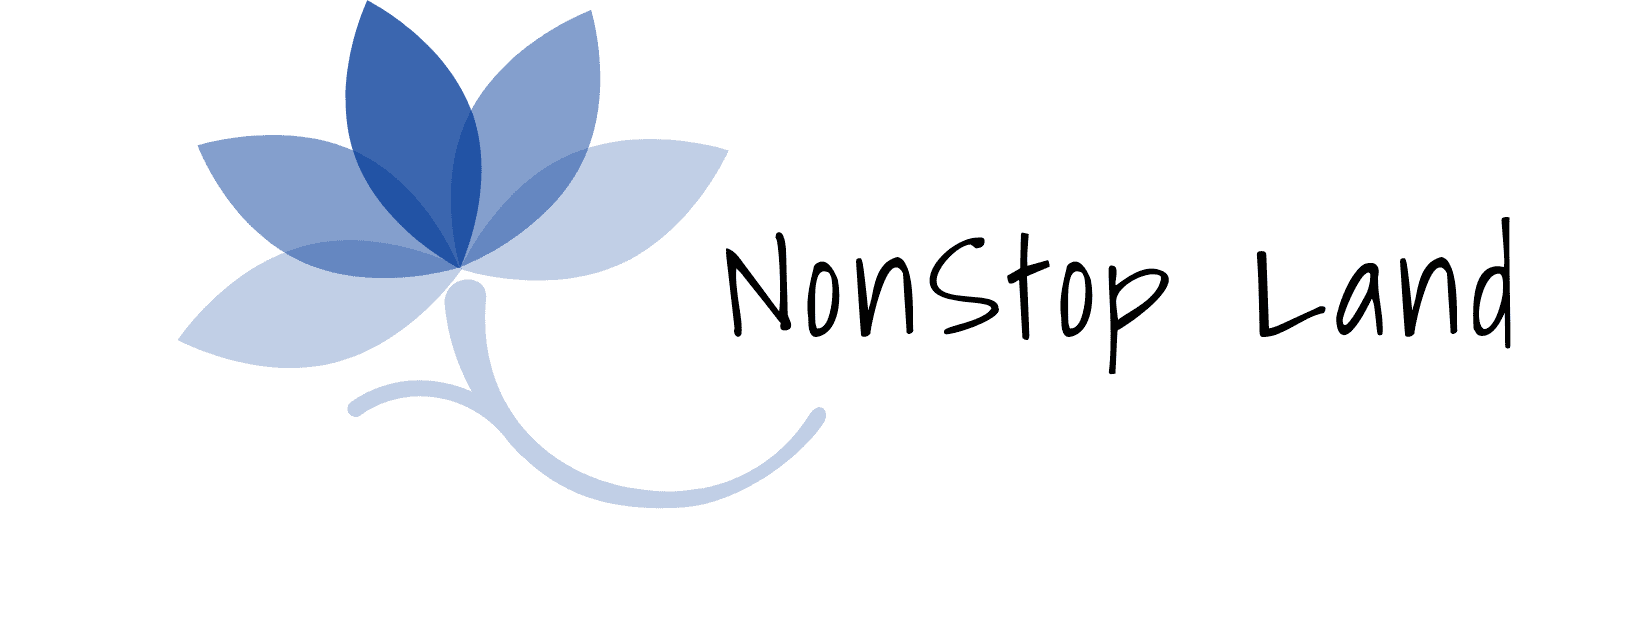 Nonstop Land logo